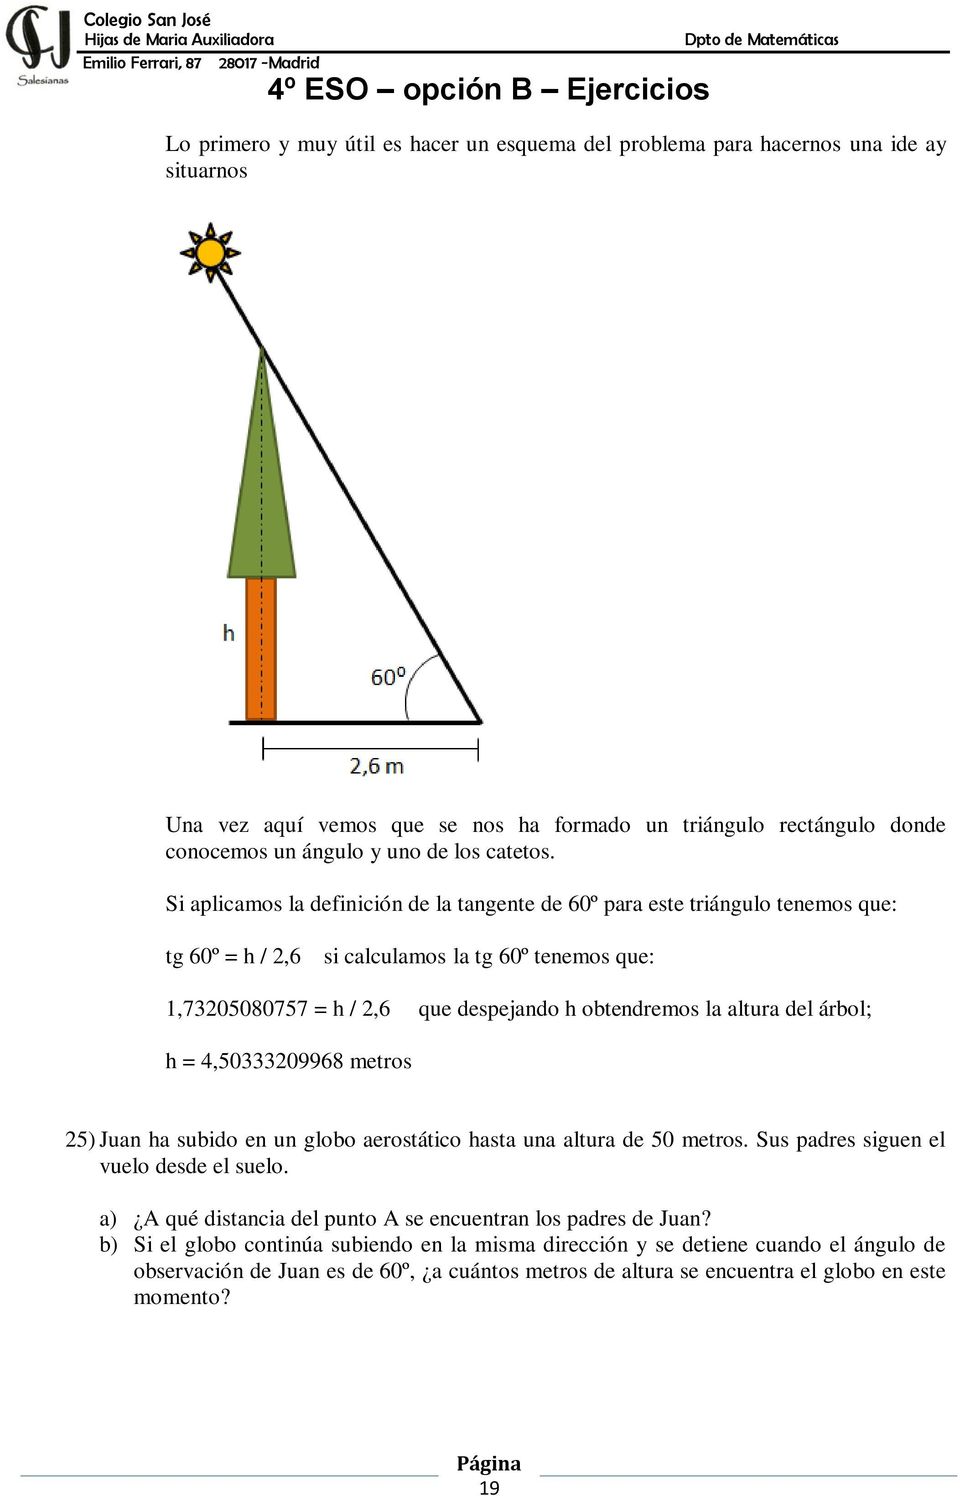 Si aplicamos la definición de la tangente de 60º para este triángulo tenemos que: tg 60º = h / 2,6 si calculamos la tg 60º tenemos que: 1,73205080757 = h / 2,6 que despejando h obtendremos la altura